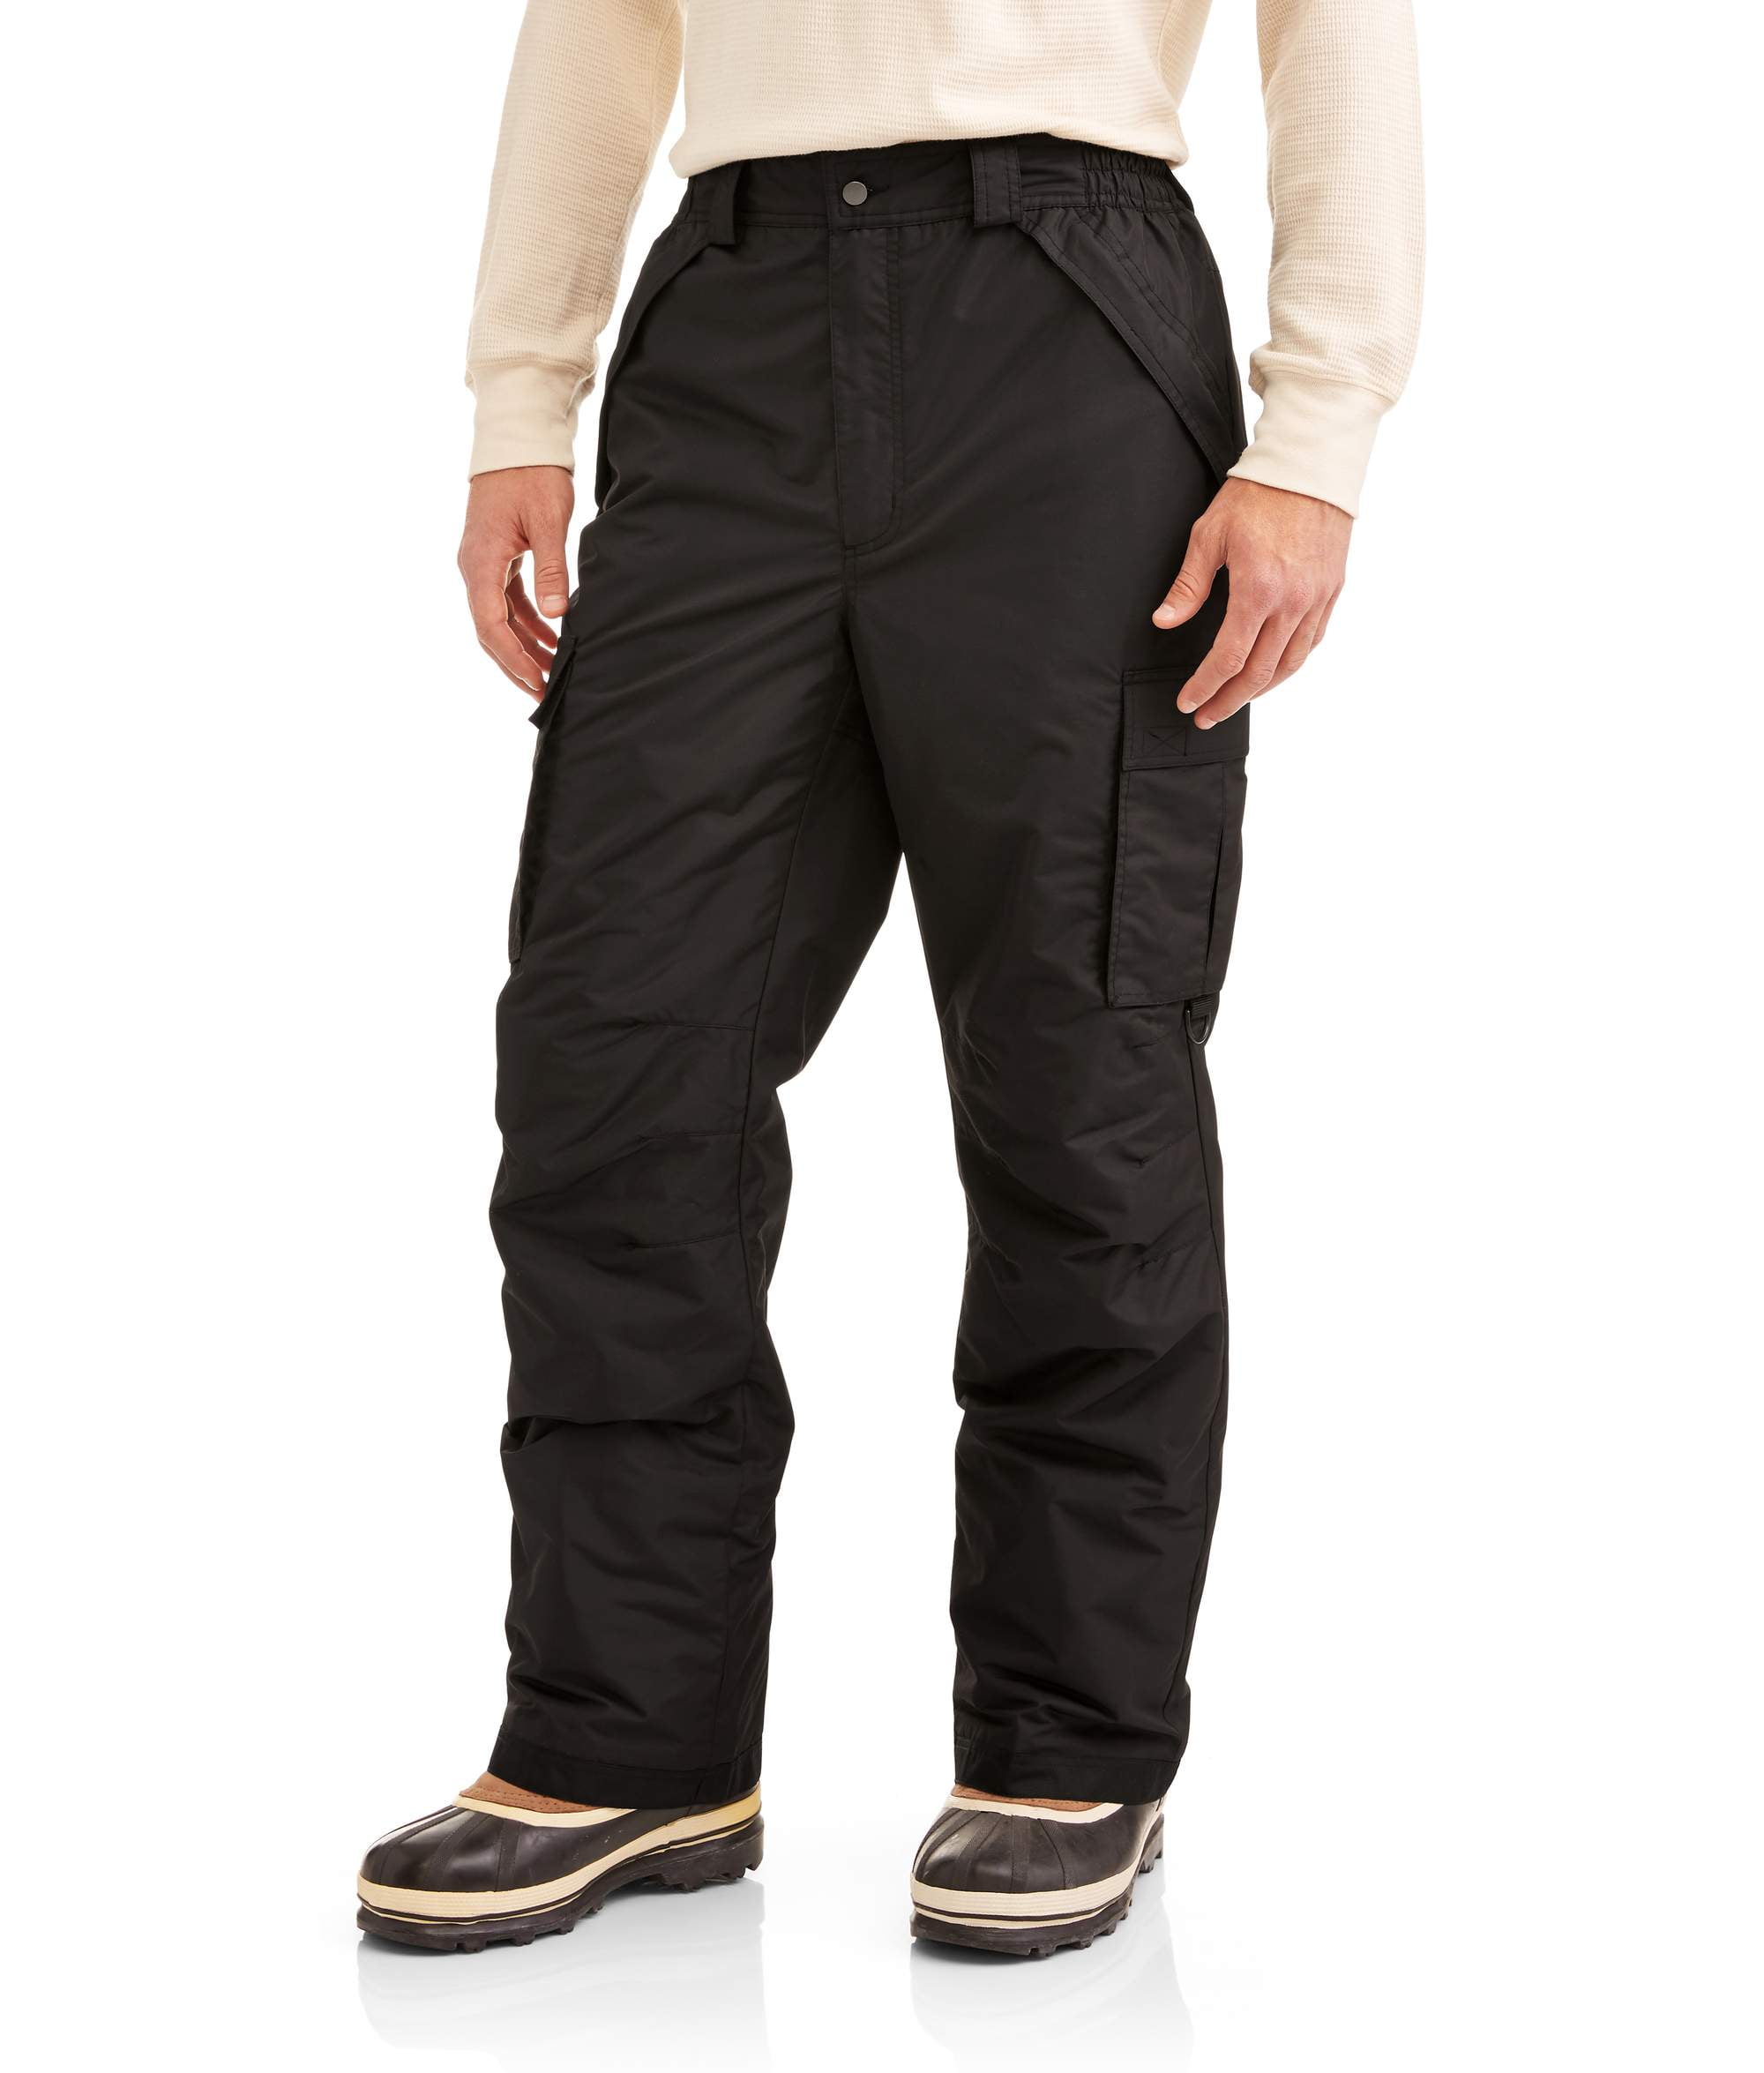 Men Women Ski Pants Waterproof Snow Pants Ski Trousers Snowboard Clothing S-3XL 